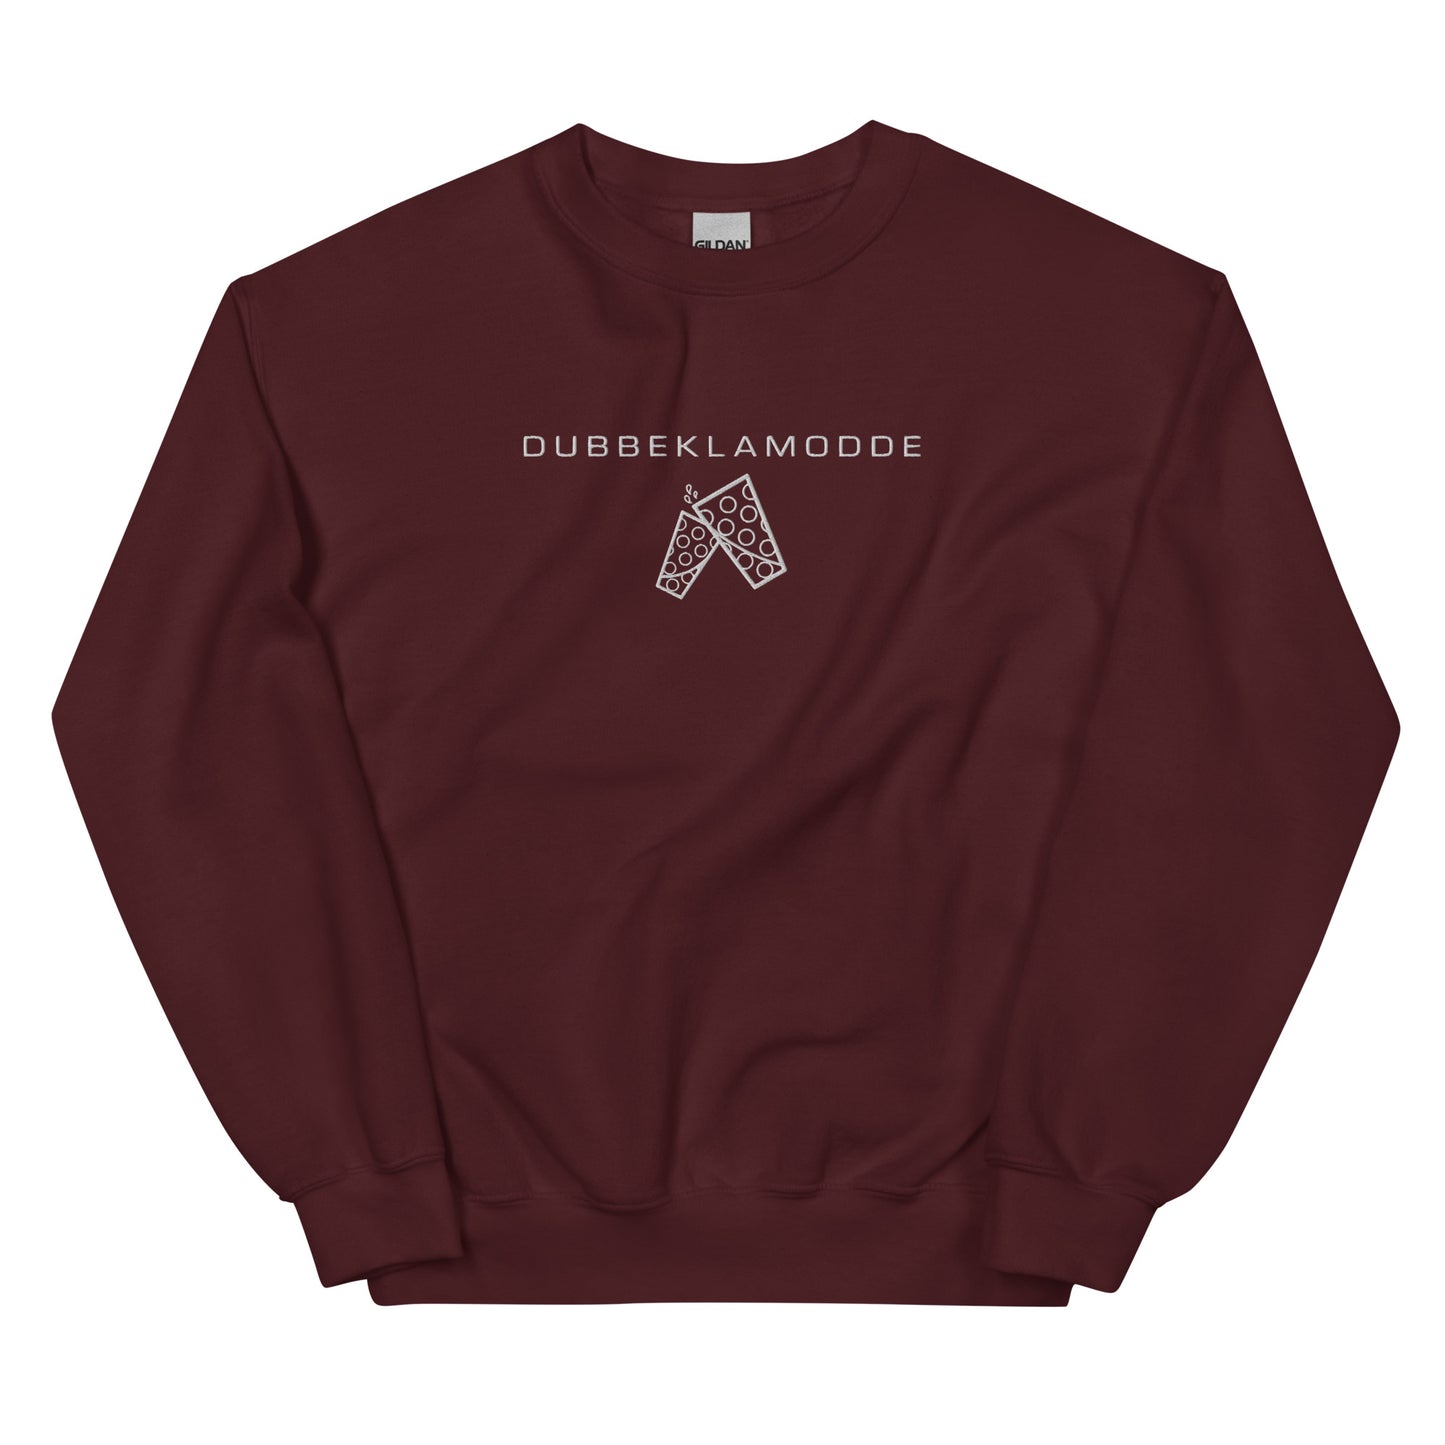 Dubbe Basic Sweatshirt - DUBBEKLAMODDE